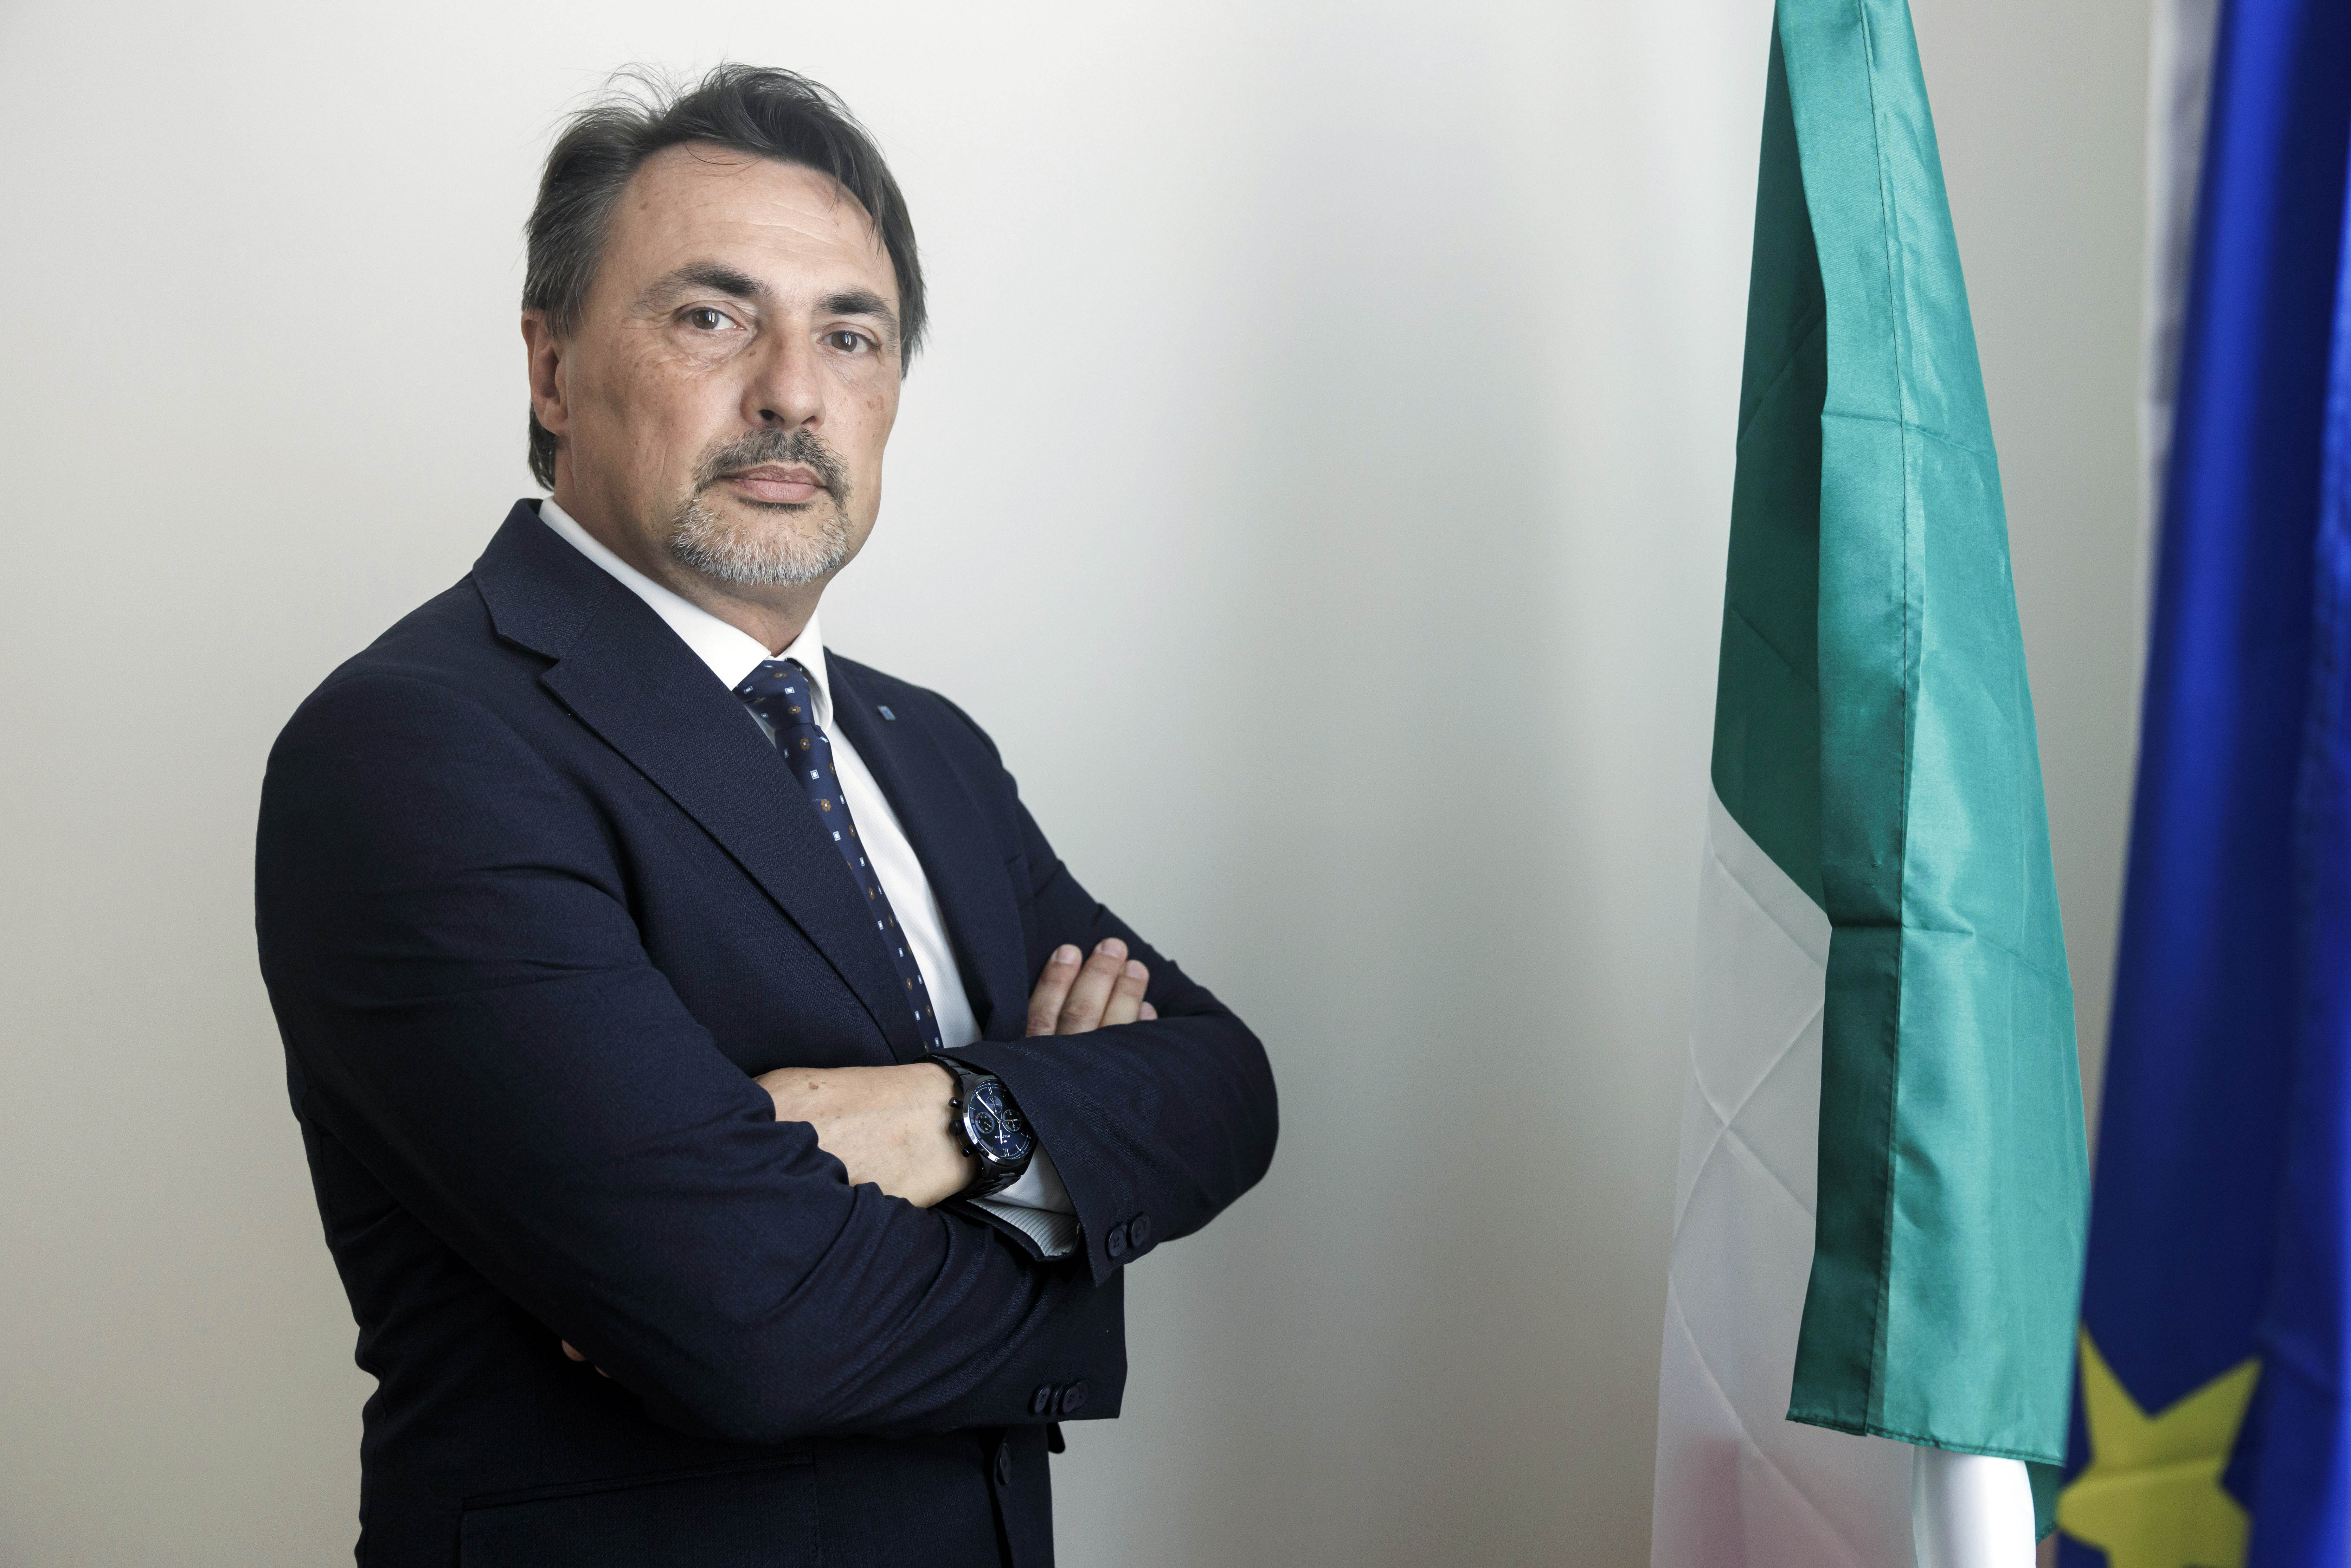 Marco Vignali, focus sui collegi provinciali, i professionisti e i giovani